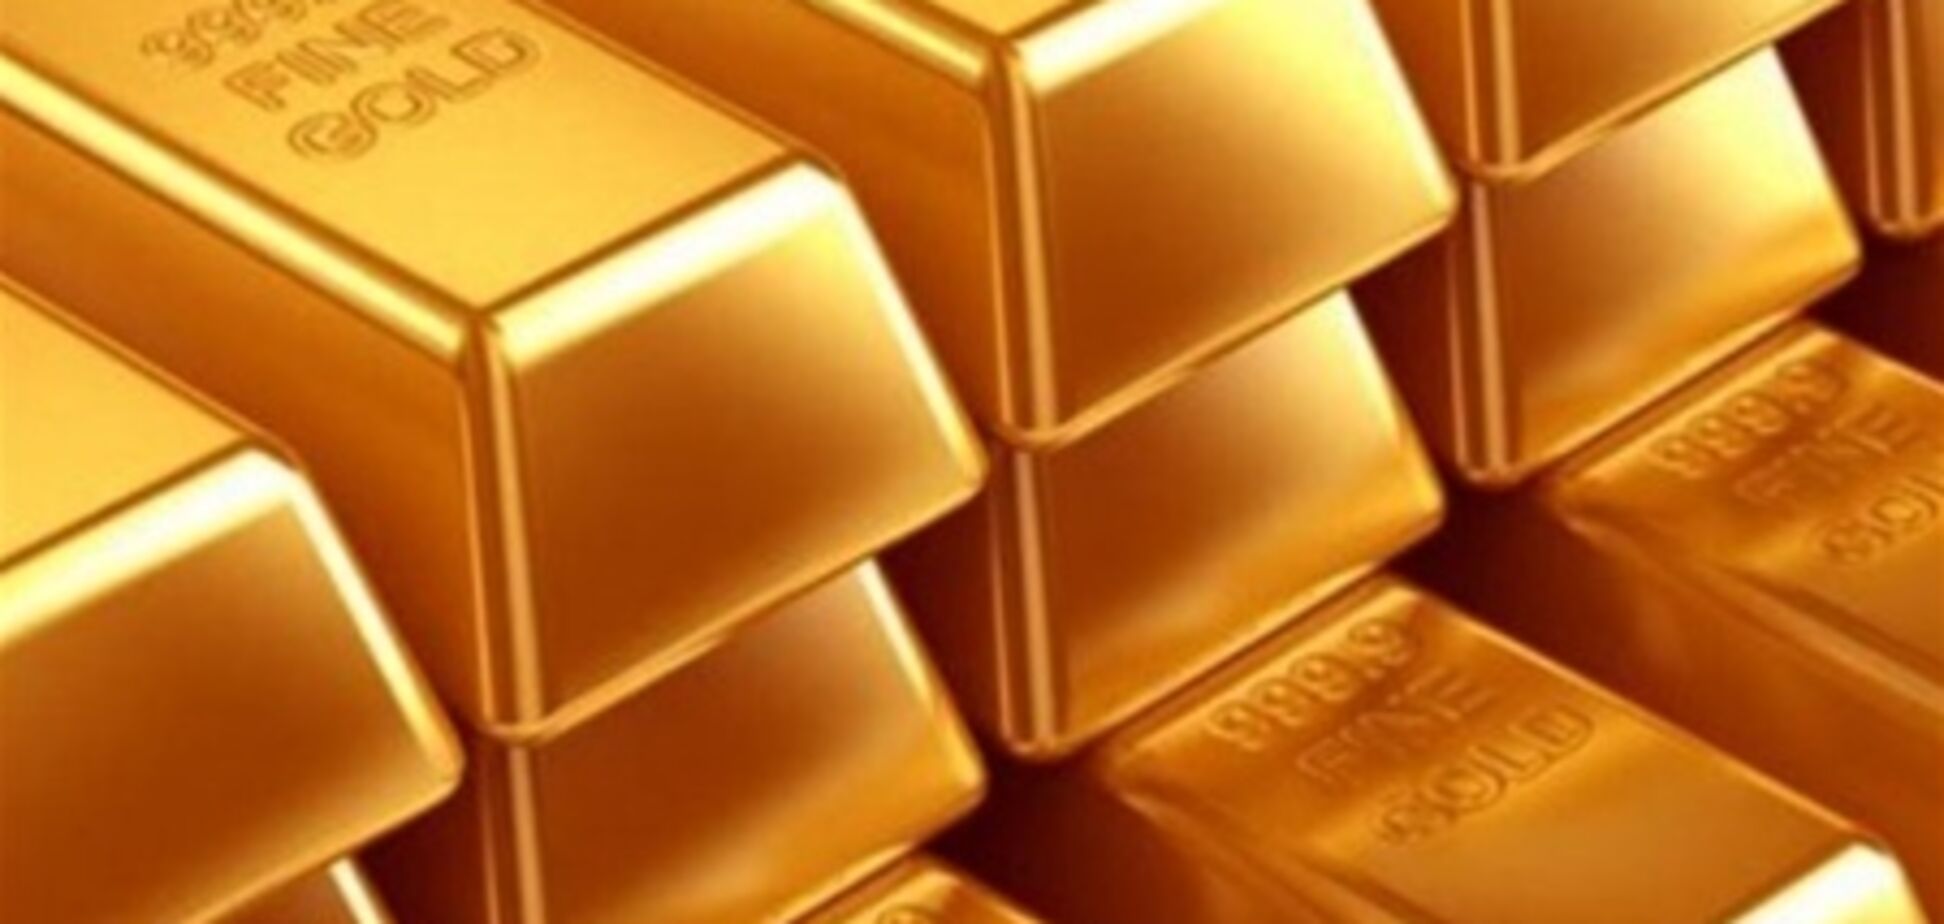 НБУ поднял золото в цене, 13 июня 2013